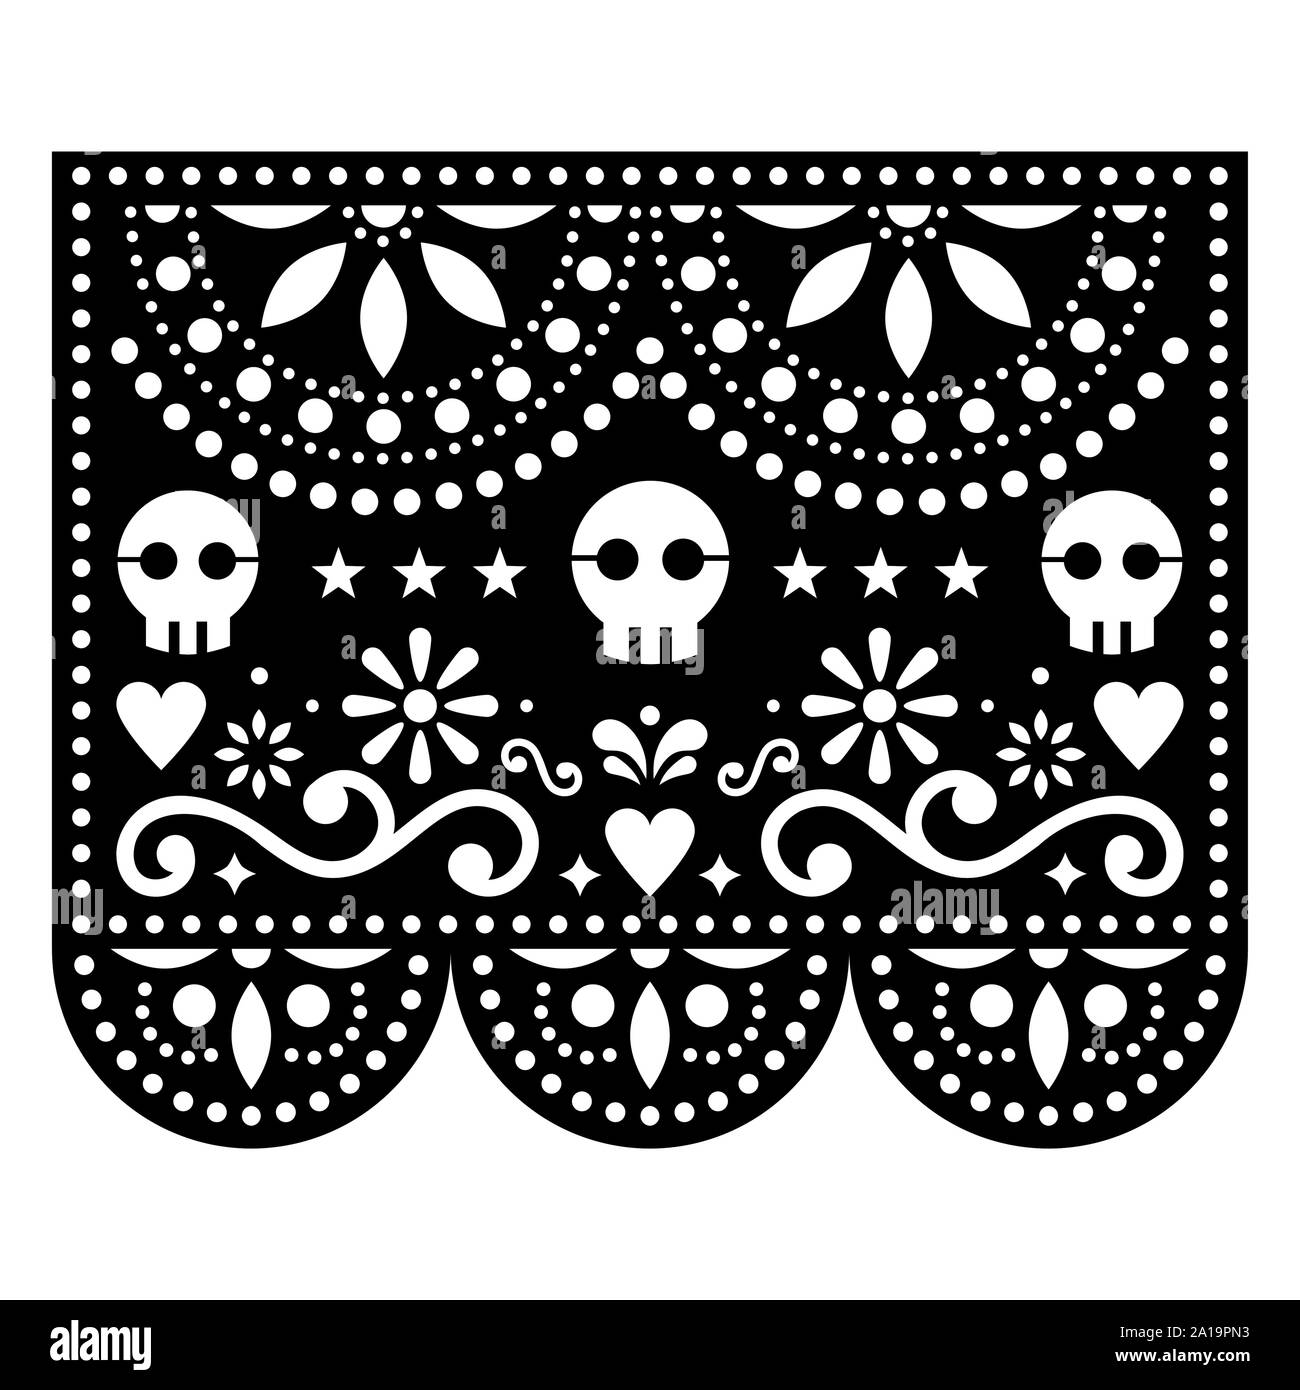 Halloween papel picado design avec des crânes, papier mexicain cut out pattern - Dia de los Muertos, jour de célébration des morts Illustration de Vecteur